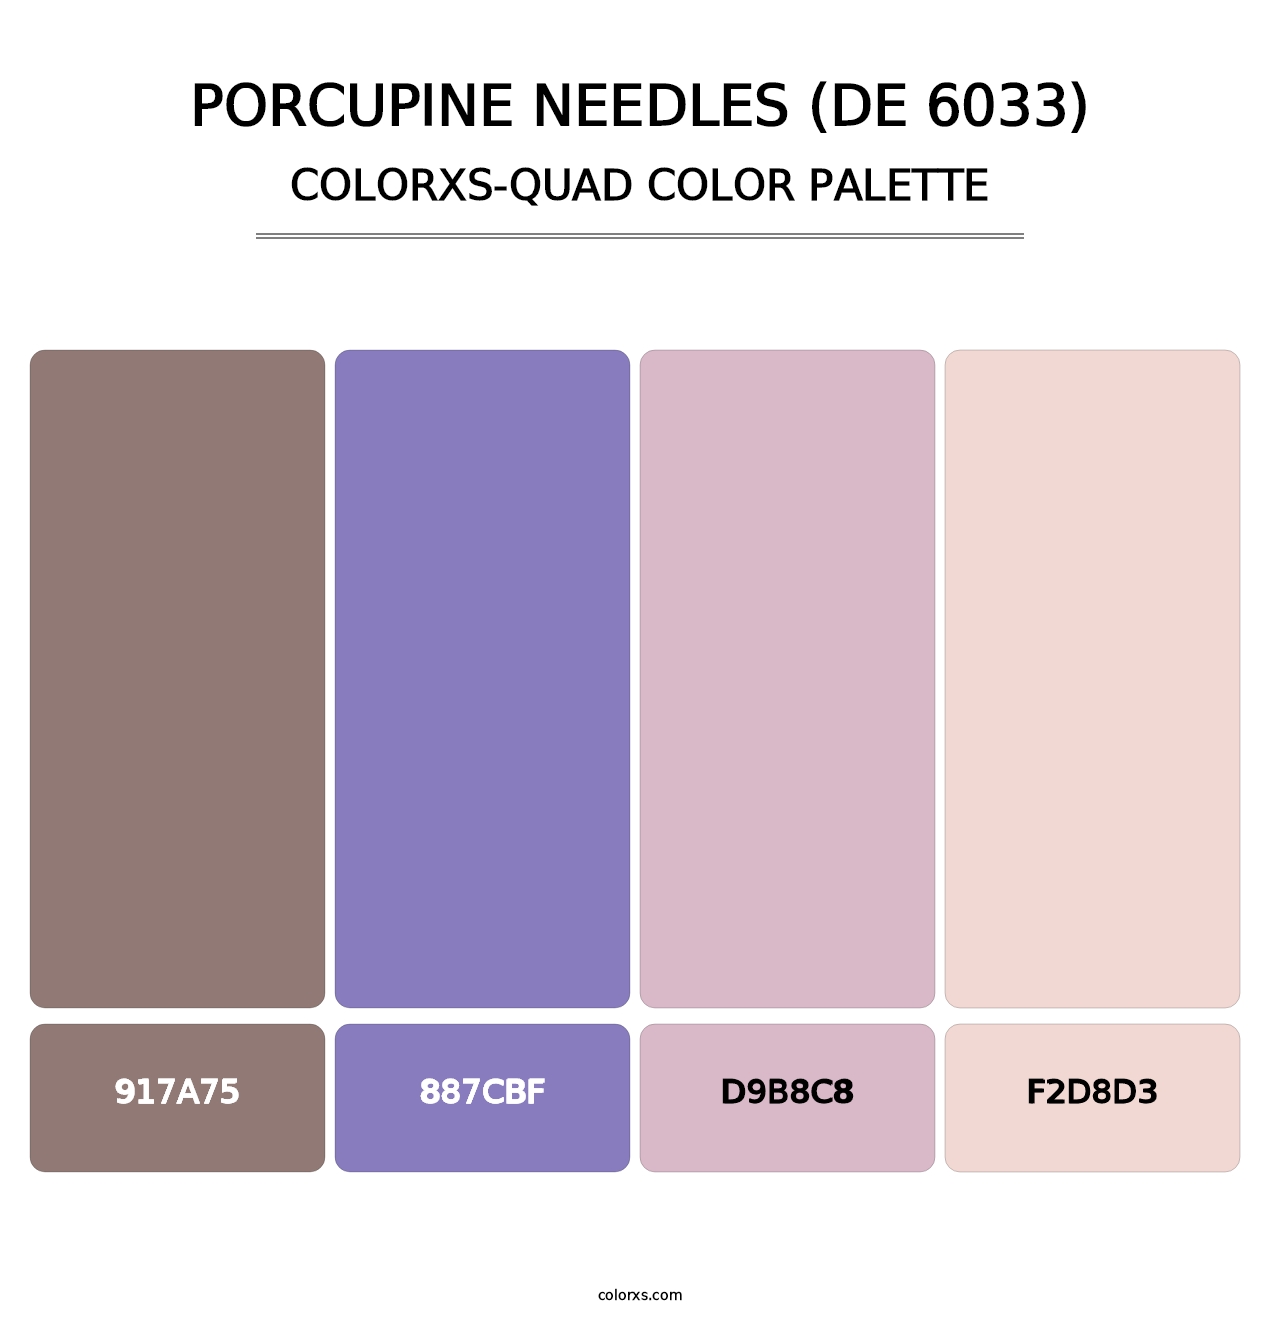 Porcupine Needles (DE 6033) - Colorxs Quad Palette